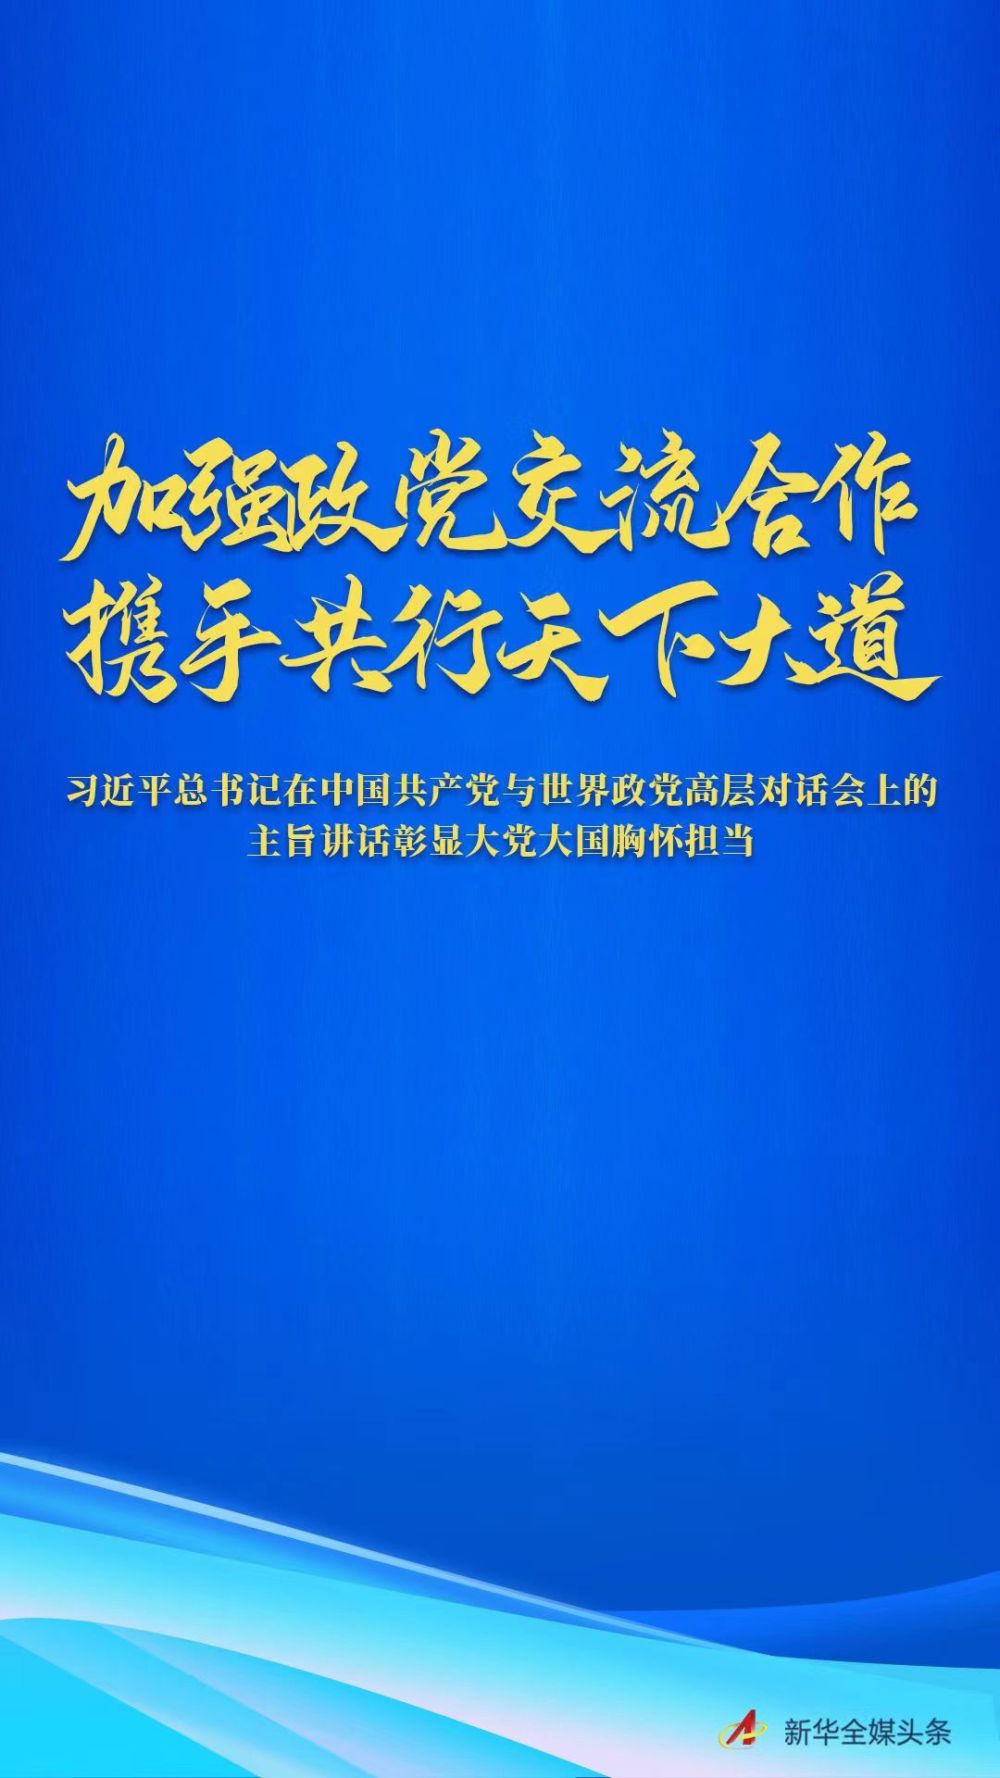 习近平总书记在中国共产党与世界政党高层对话会上的主旨讲话彰显大党大国胸怀担当